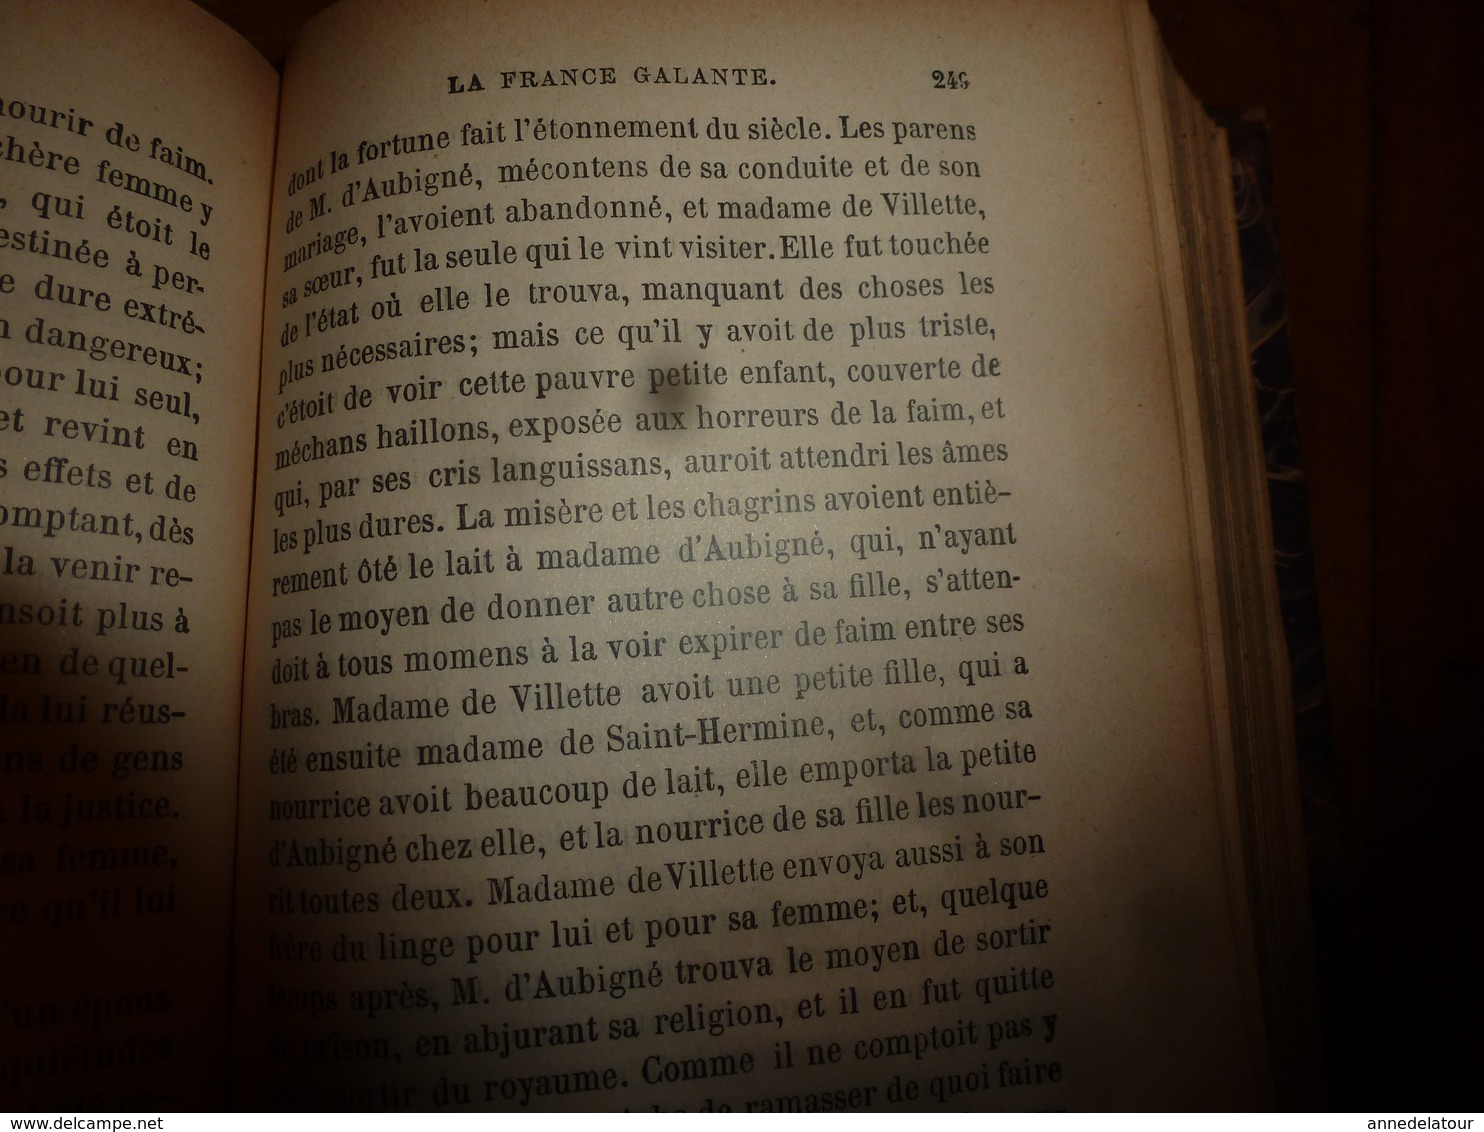 1840 HISTOIRE AMOUREUSE DES GAULES  tome 2   Par Bussy-Rabutin     Suivi de la France galante du XVIIe siècle